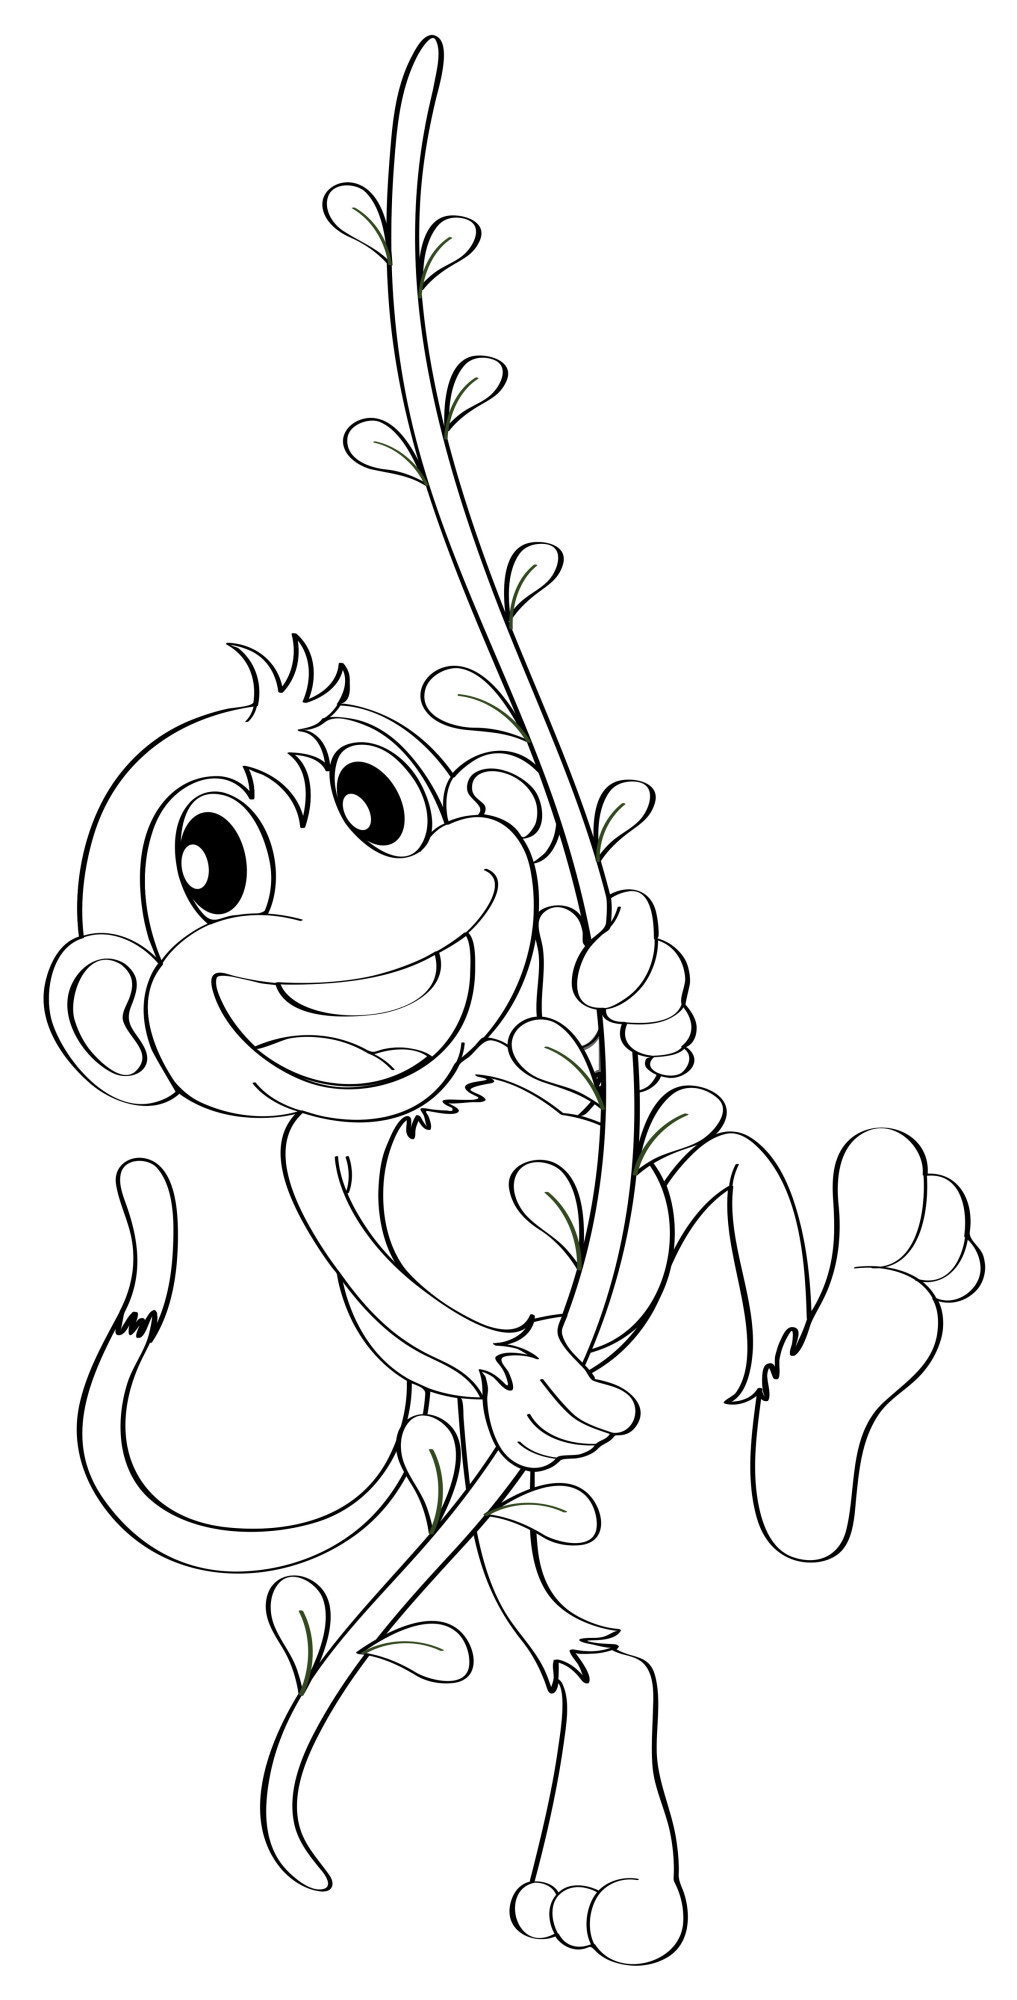 Раскраска для детей: обезьяна катается на лиане